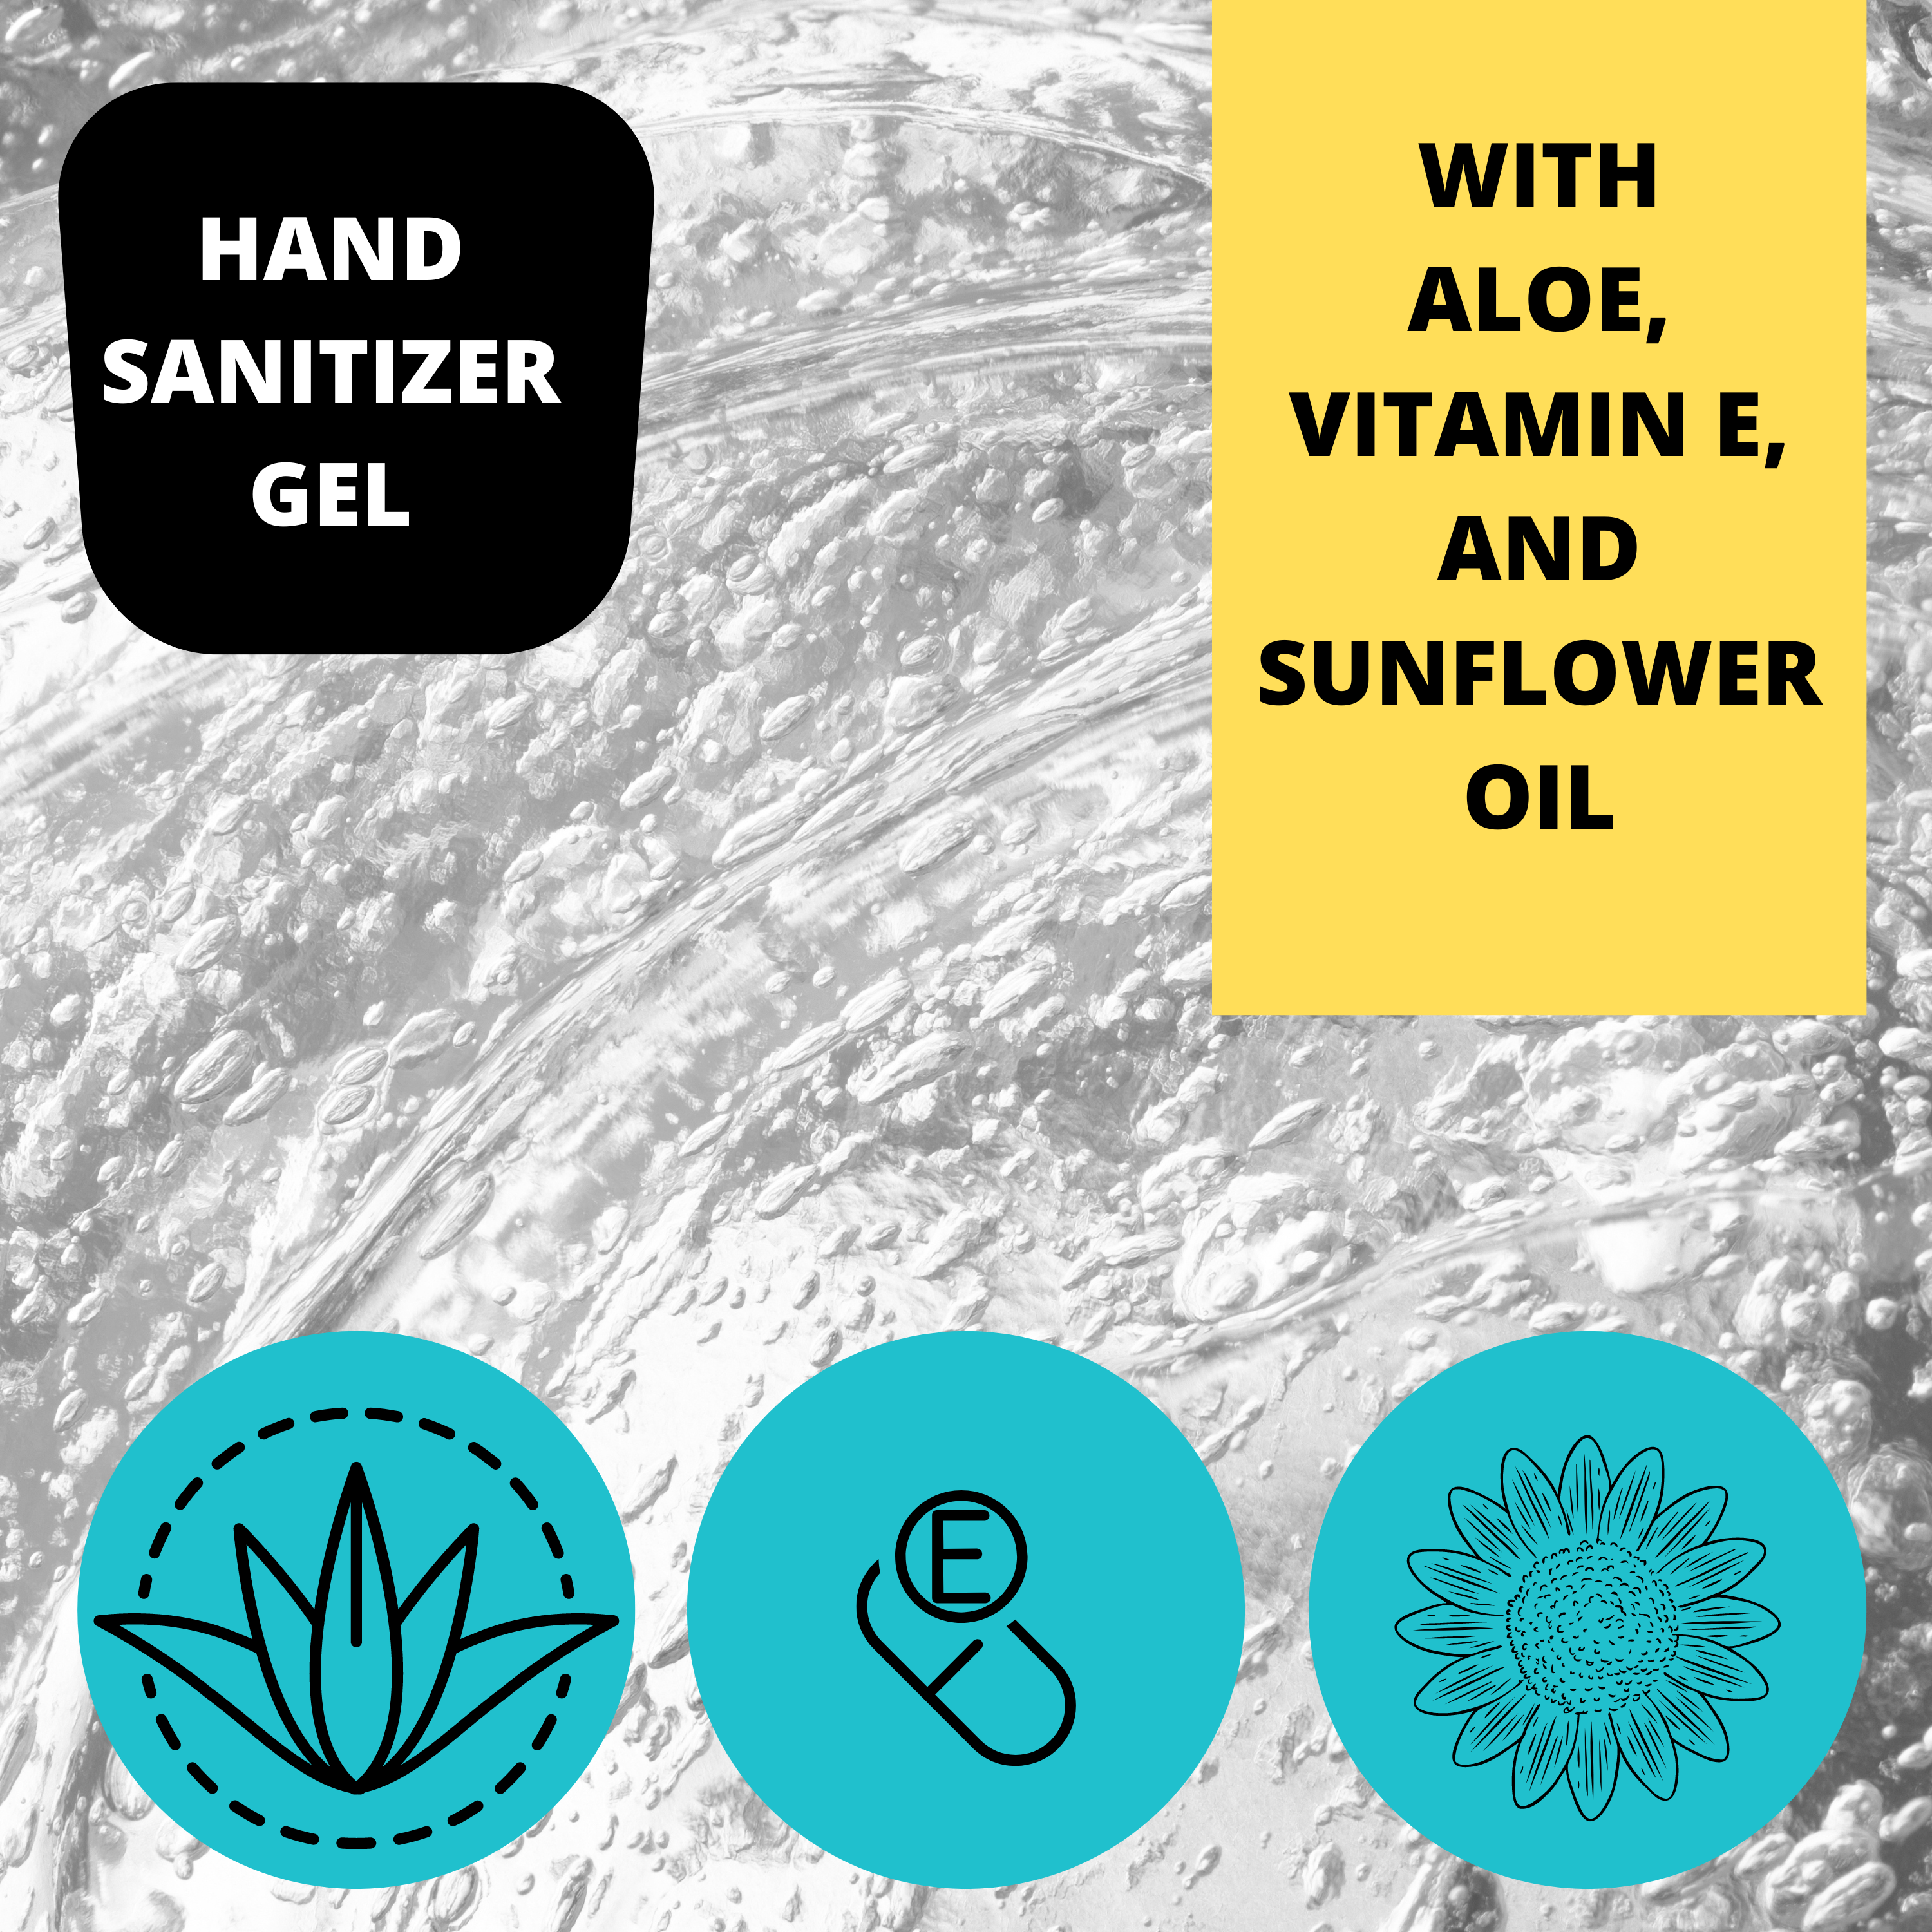 Black Canyon Apples & Oranges Scented Hand Sanitizer Gel